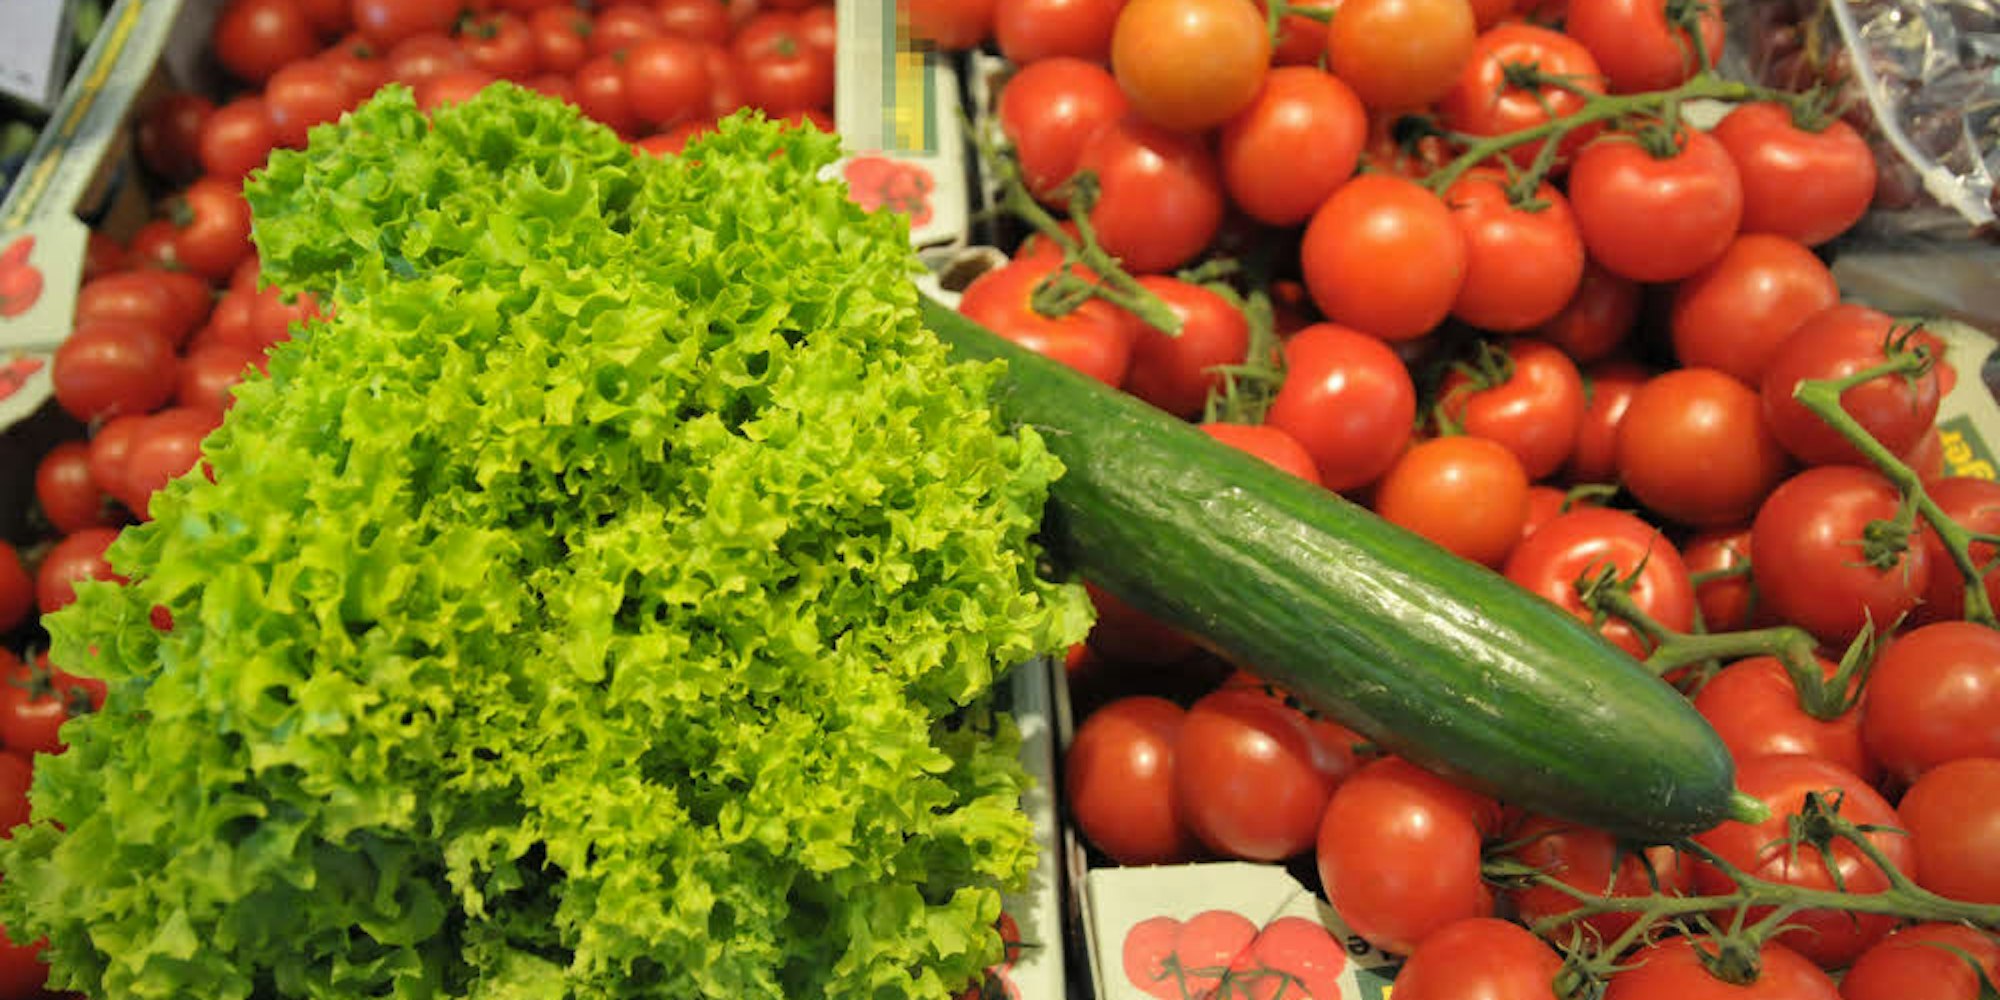 Salat hat weniger gesunde Inhaltsstoffe als etwa Tomaten.